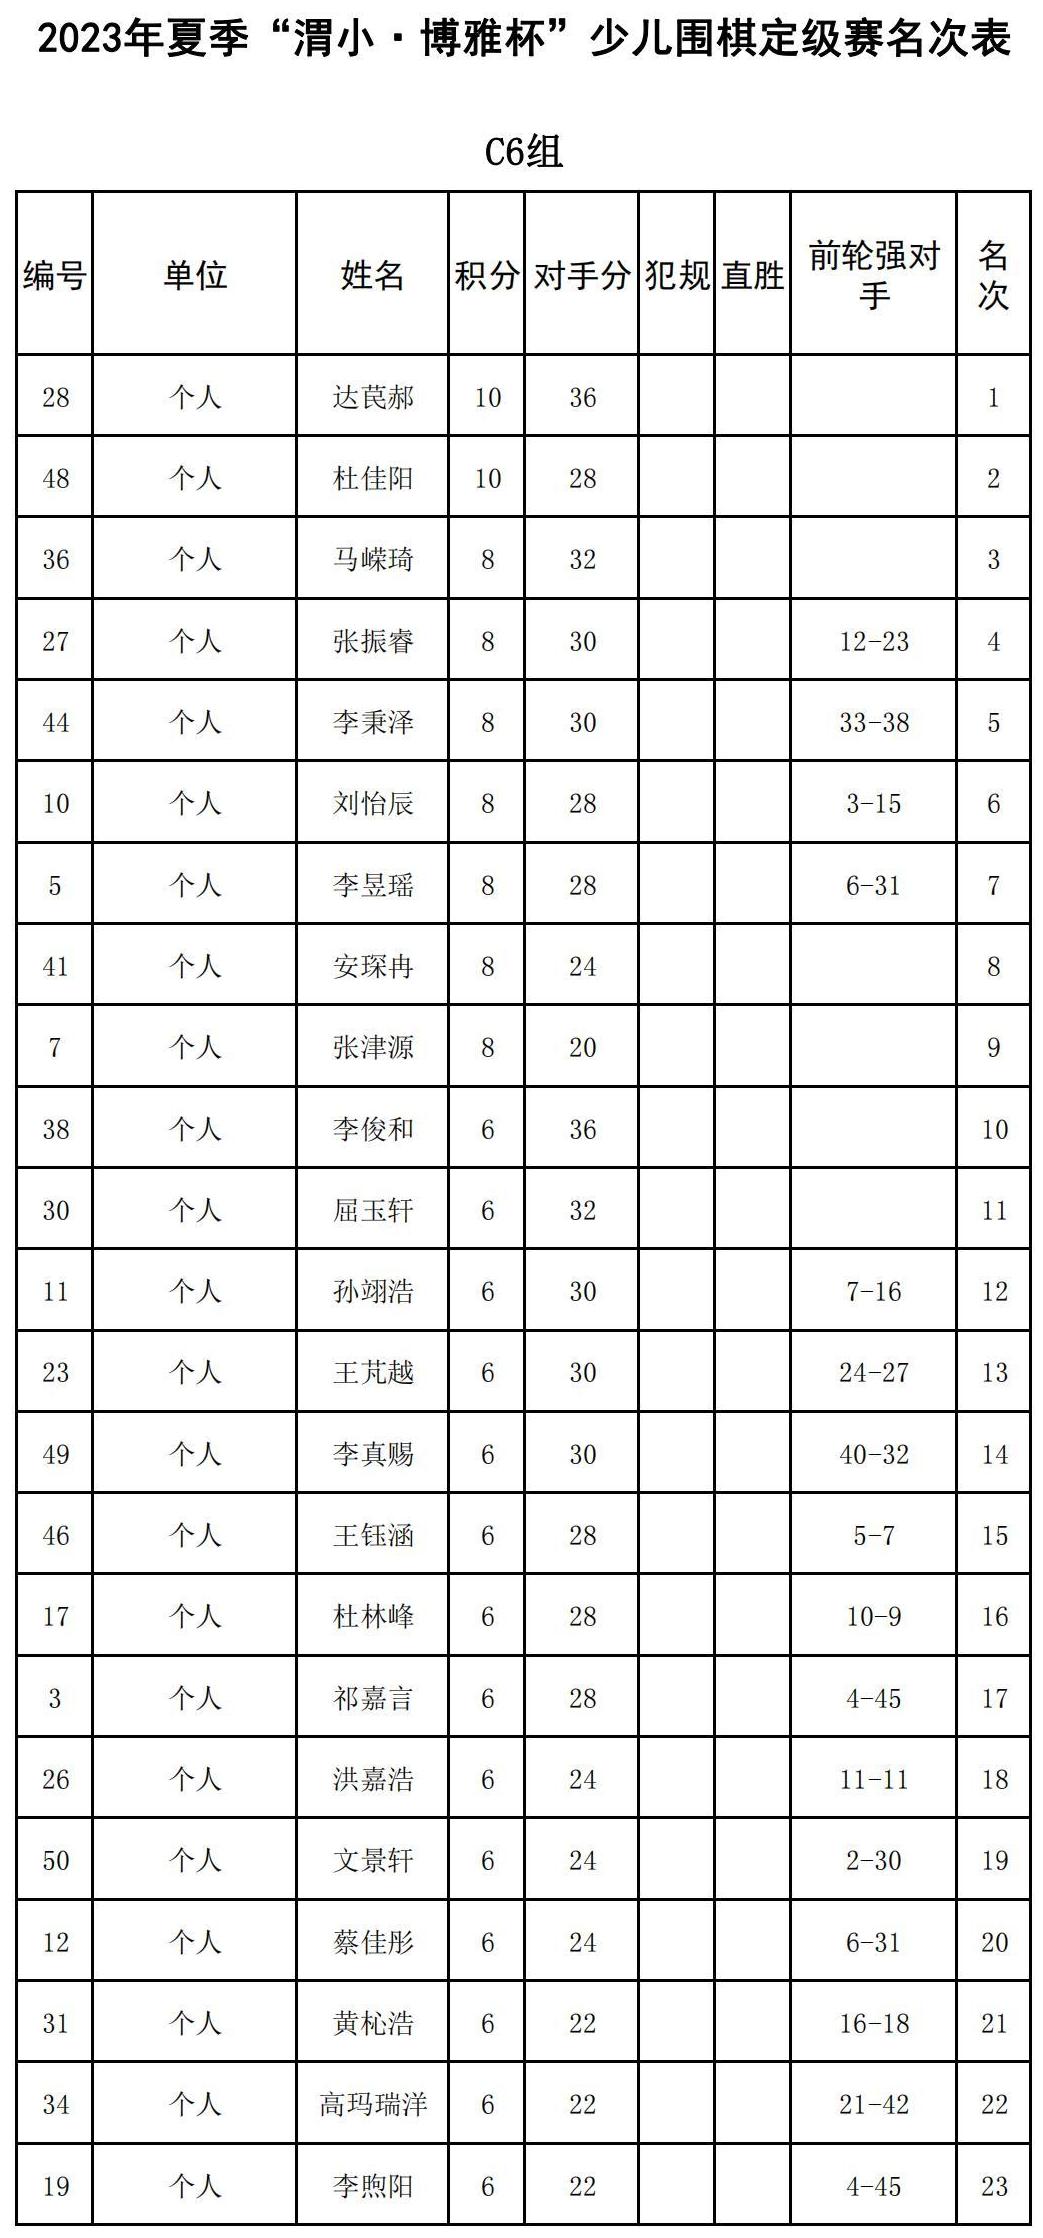 2023年夏季“渭小·博雅杯”少儿围棋定级赛C6组(名次表)_00.jpg